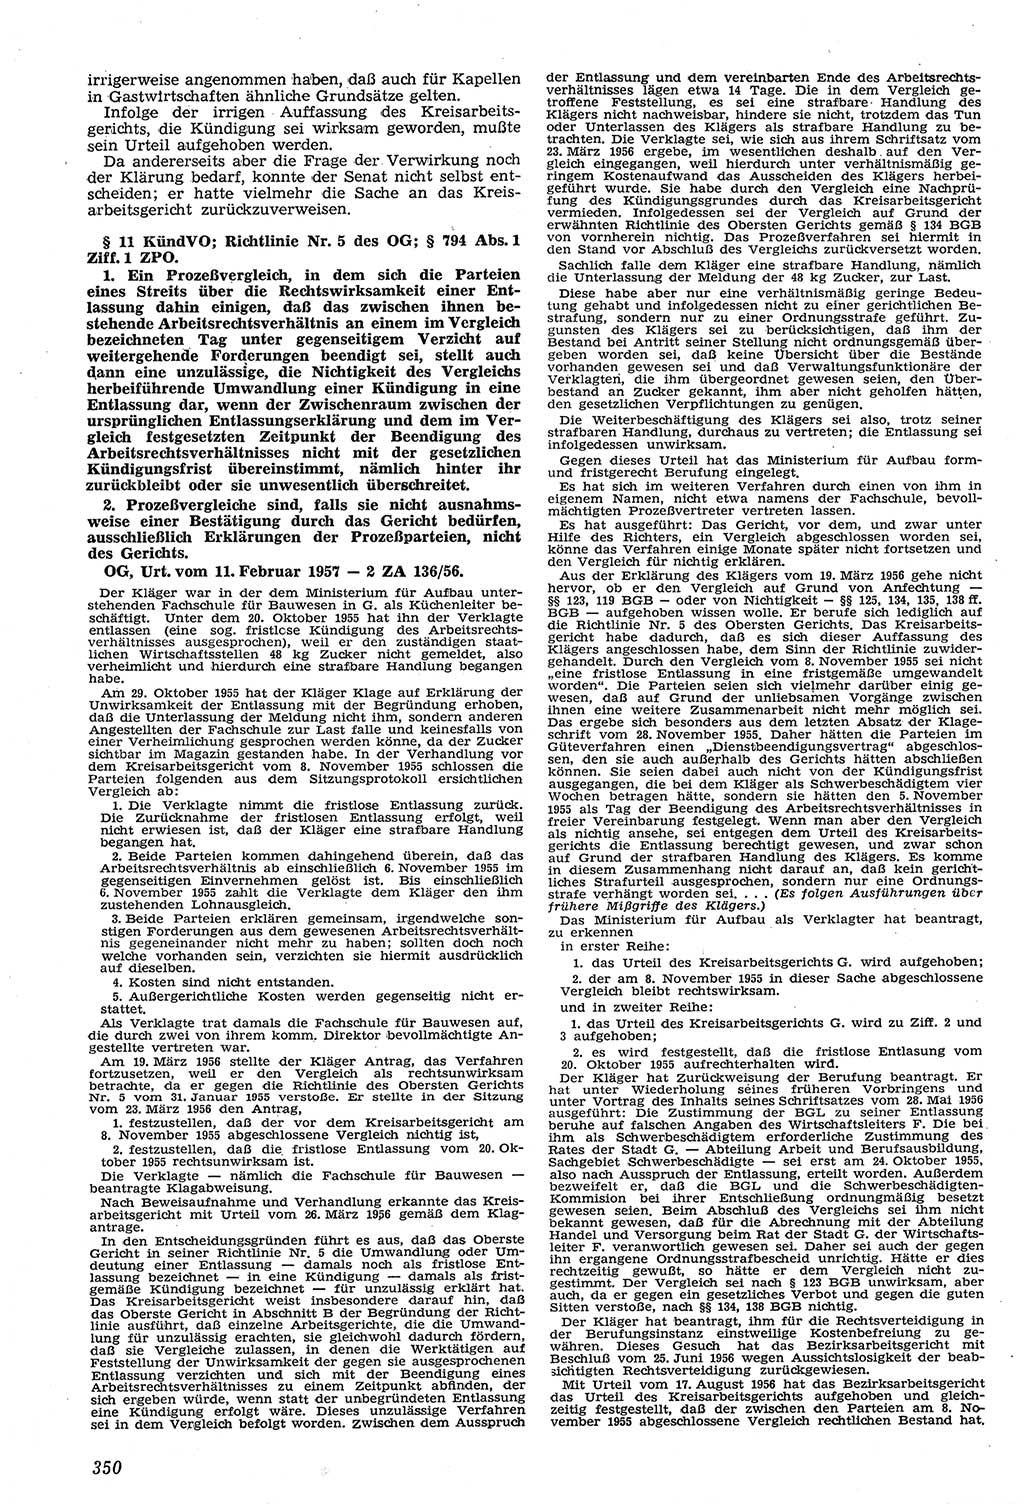 Neue Justiz (NJ), Zeitschrift für Recht und Rechtswissenschaft [Deutsche Demokratische Republik (DDR)], 11. Jahrgang 1957, Seite 350 (NJ DDR 1957, S. 350)